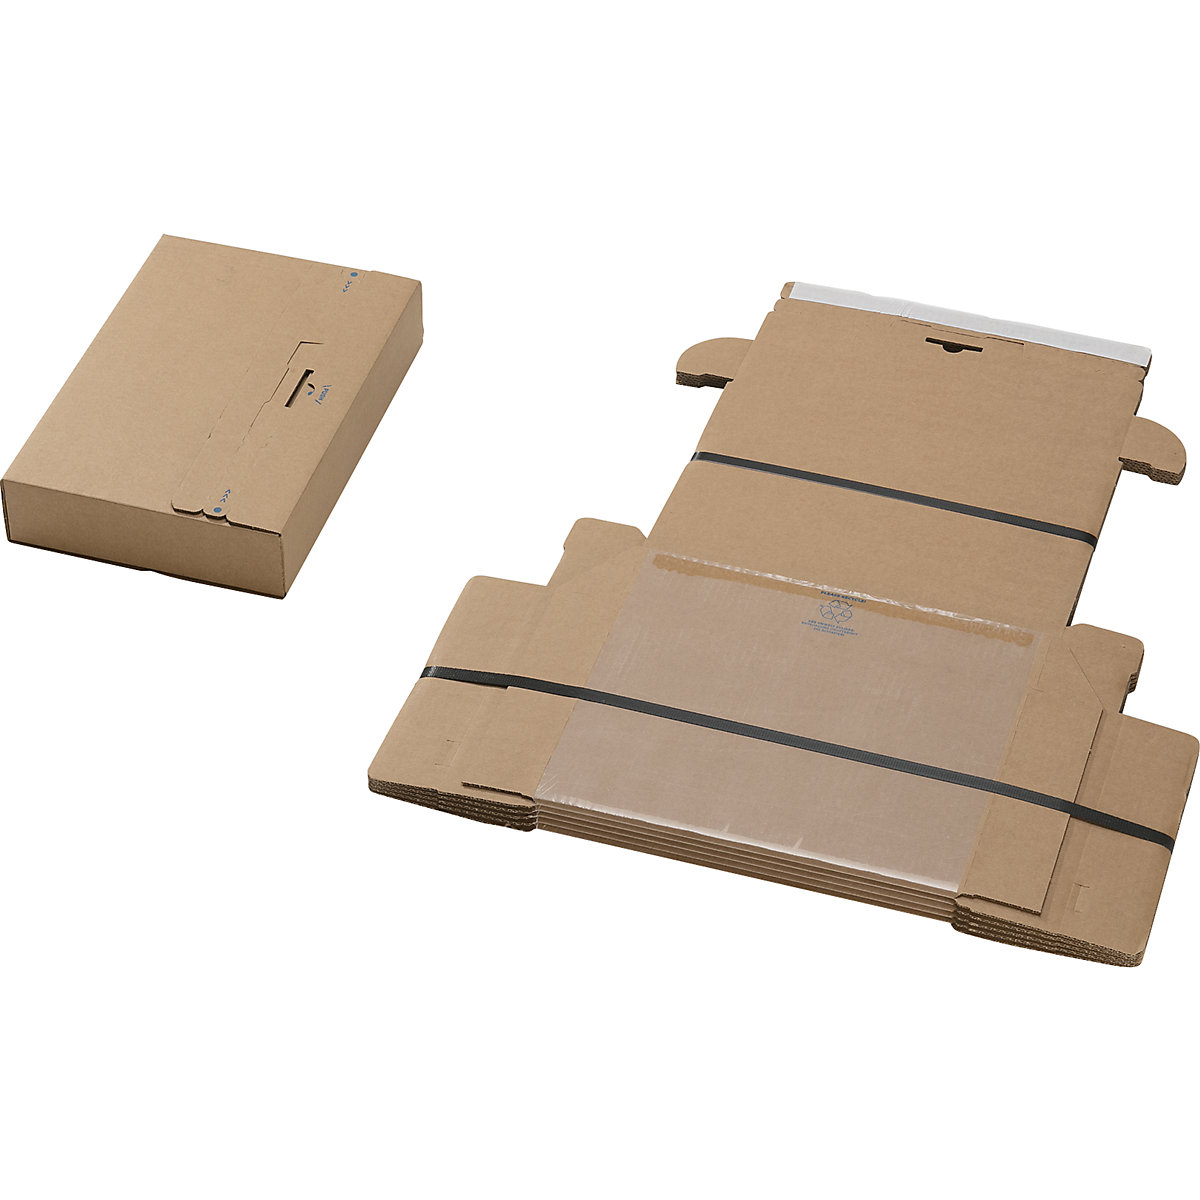 Embalagem de fixação, ''all in one'', embalagem de 40 unidades, para dimensões da embalagem CxLxA 300 x 190 x 40 mm-1